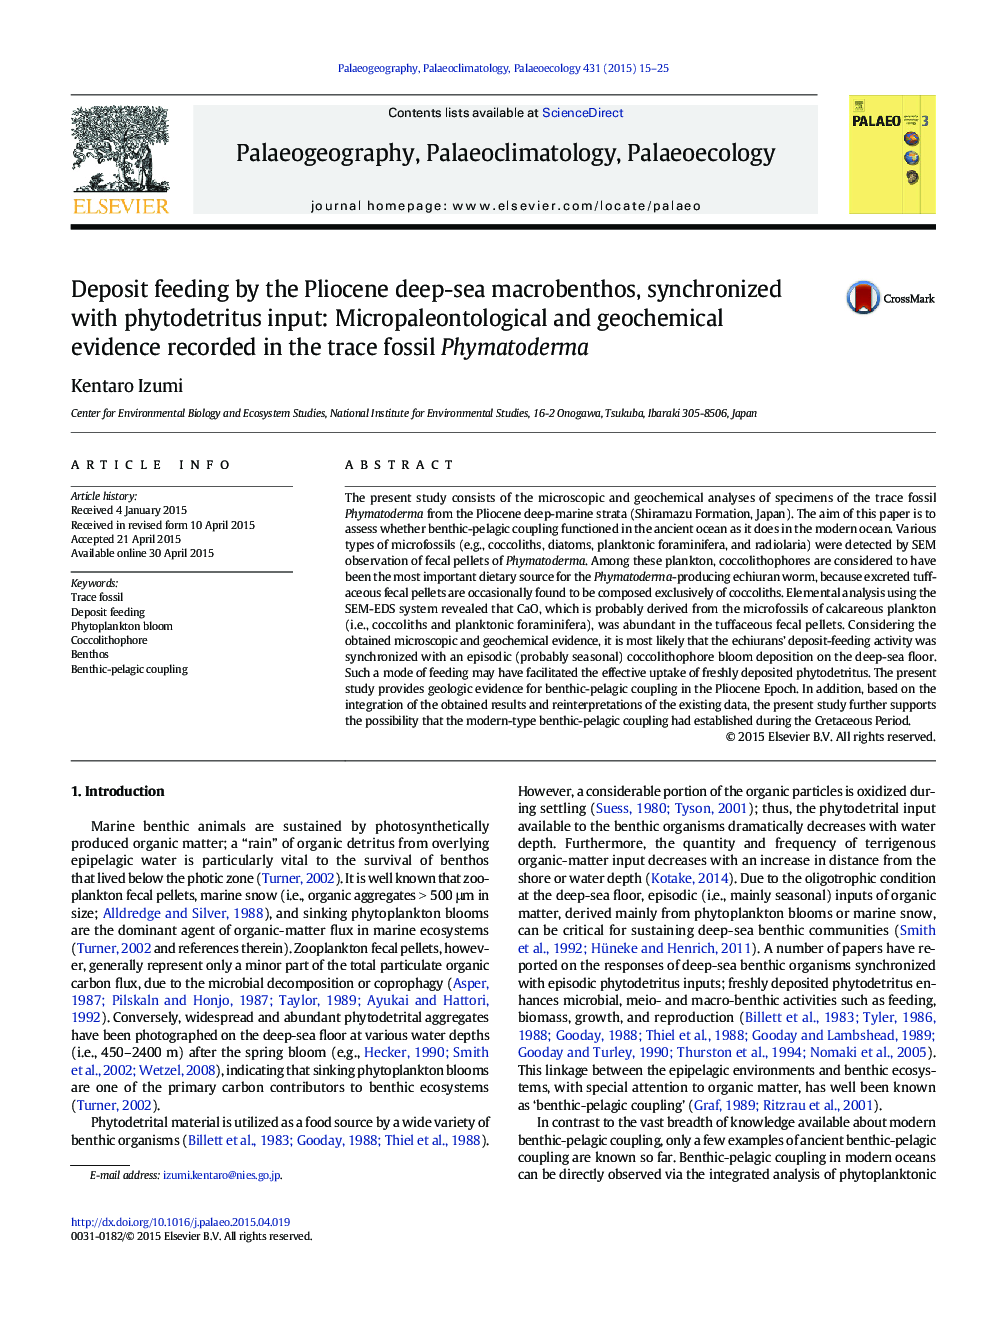 تغذیه وظیفه توسط ماکبوتوز دریای عمیق دریایی پیلوسان، هماهنگ با ورود فیتودیتریتوس: شواهد میکروپالئونتولوژیک و ژئوشیمیایی موجود در فیماتودرما فسیلی 